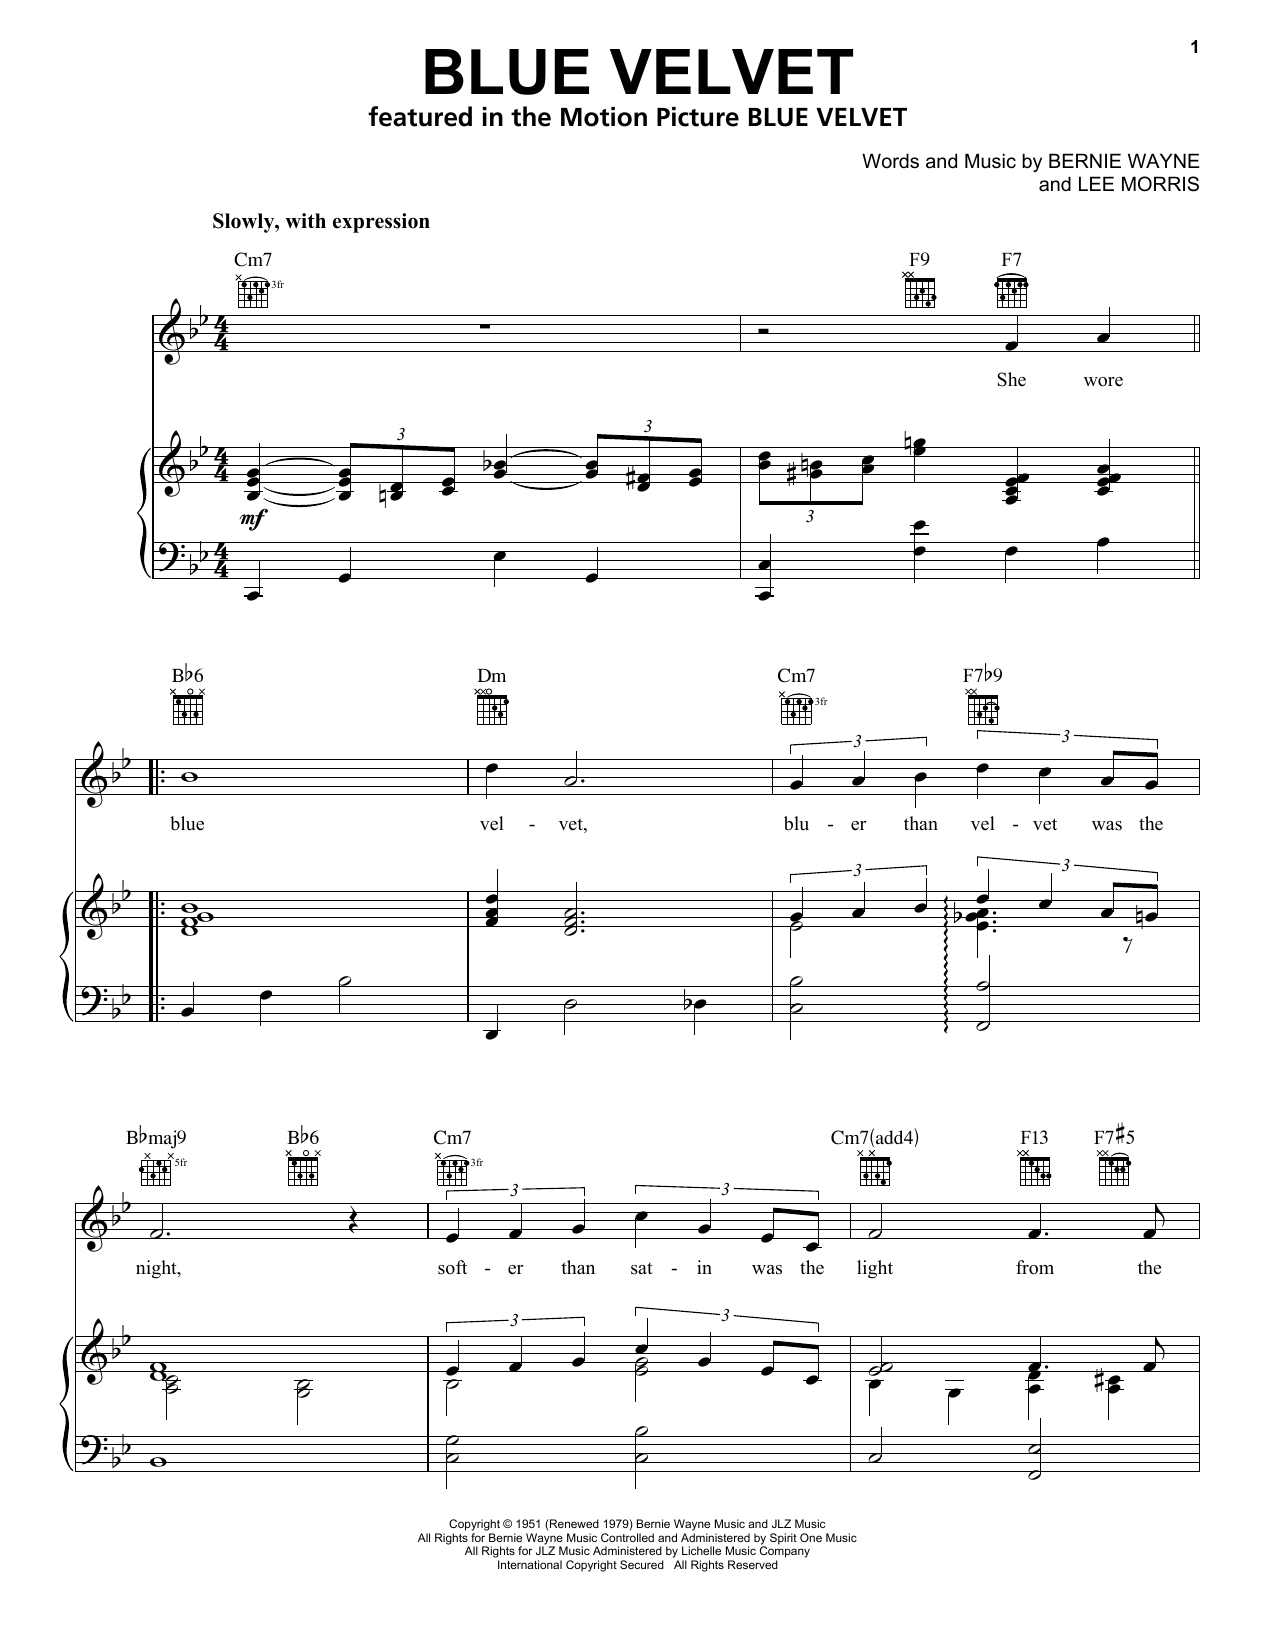 Bobby Vinton Blue Velvet sheet music notes and chords arranged for Lead Sheet / Fake Book